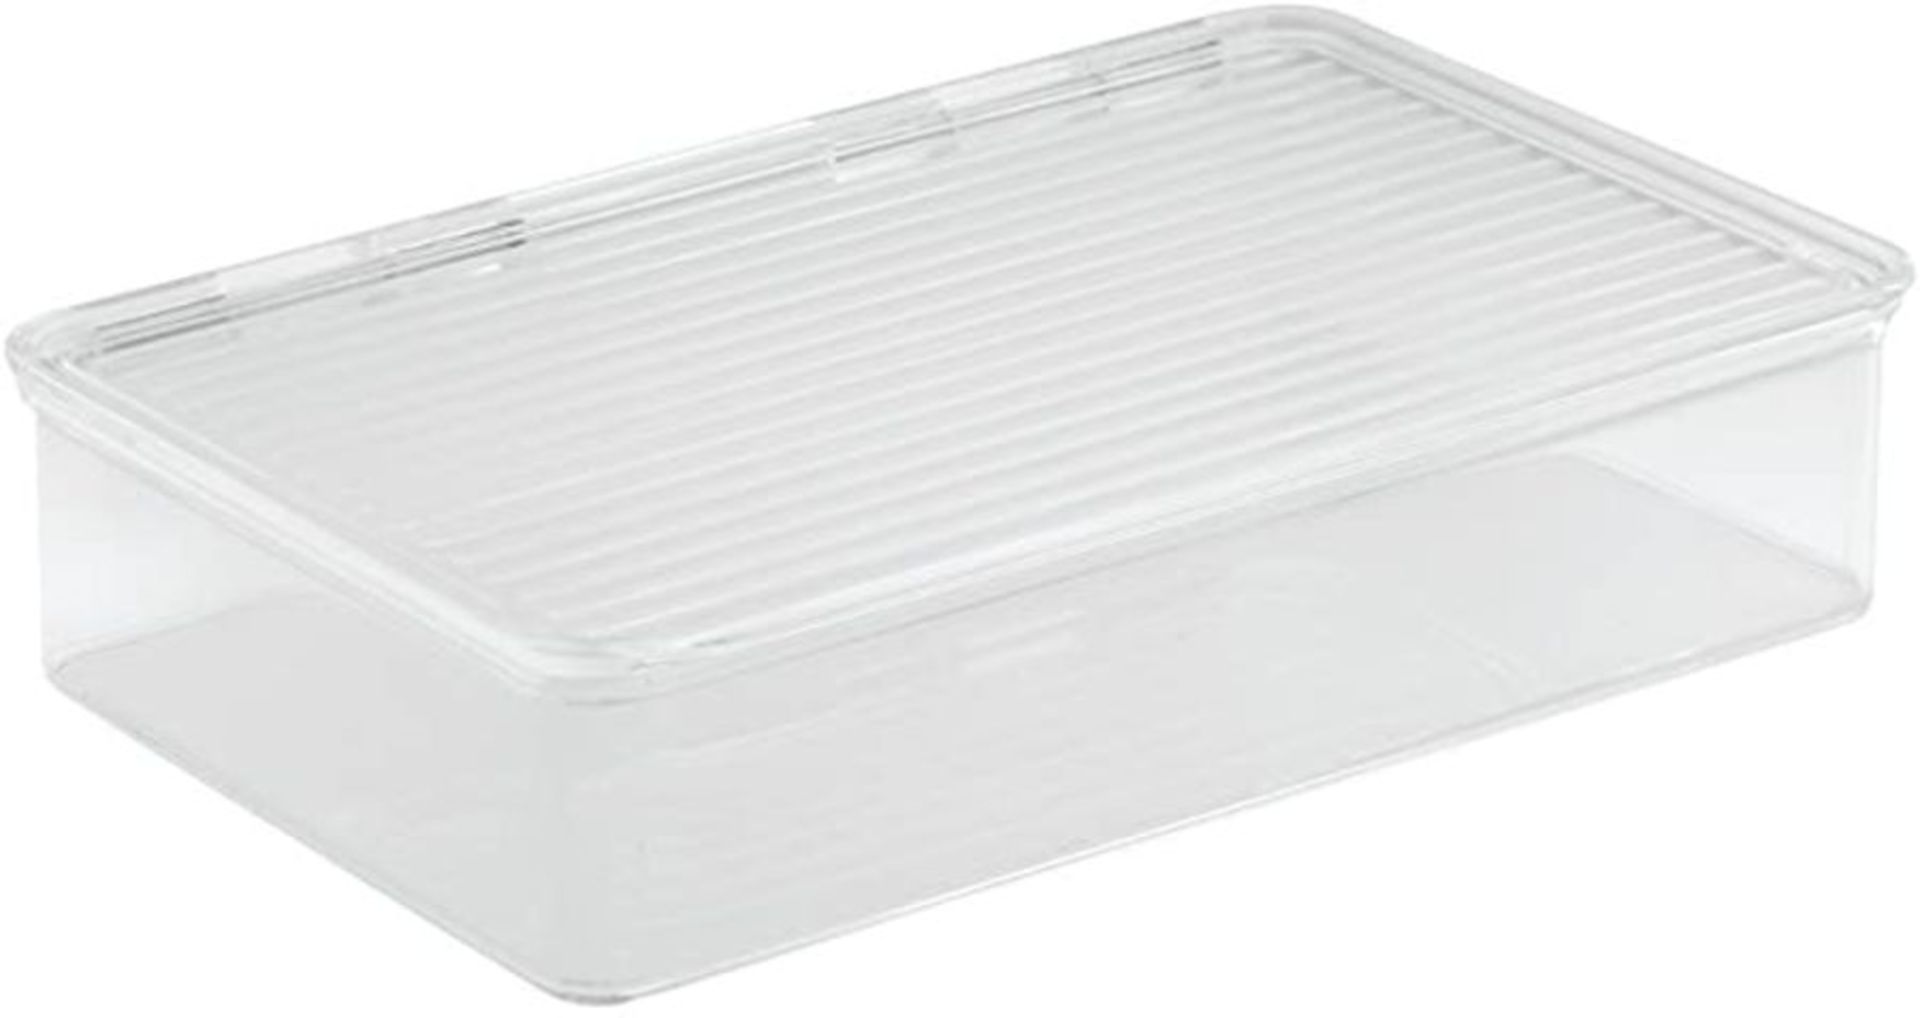 iDesign 63030 Cabinet/Kitchen Binz Stackable Kitchen Storage Container, Small Plastic Storage